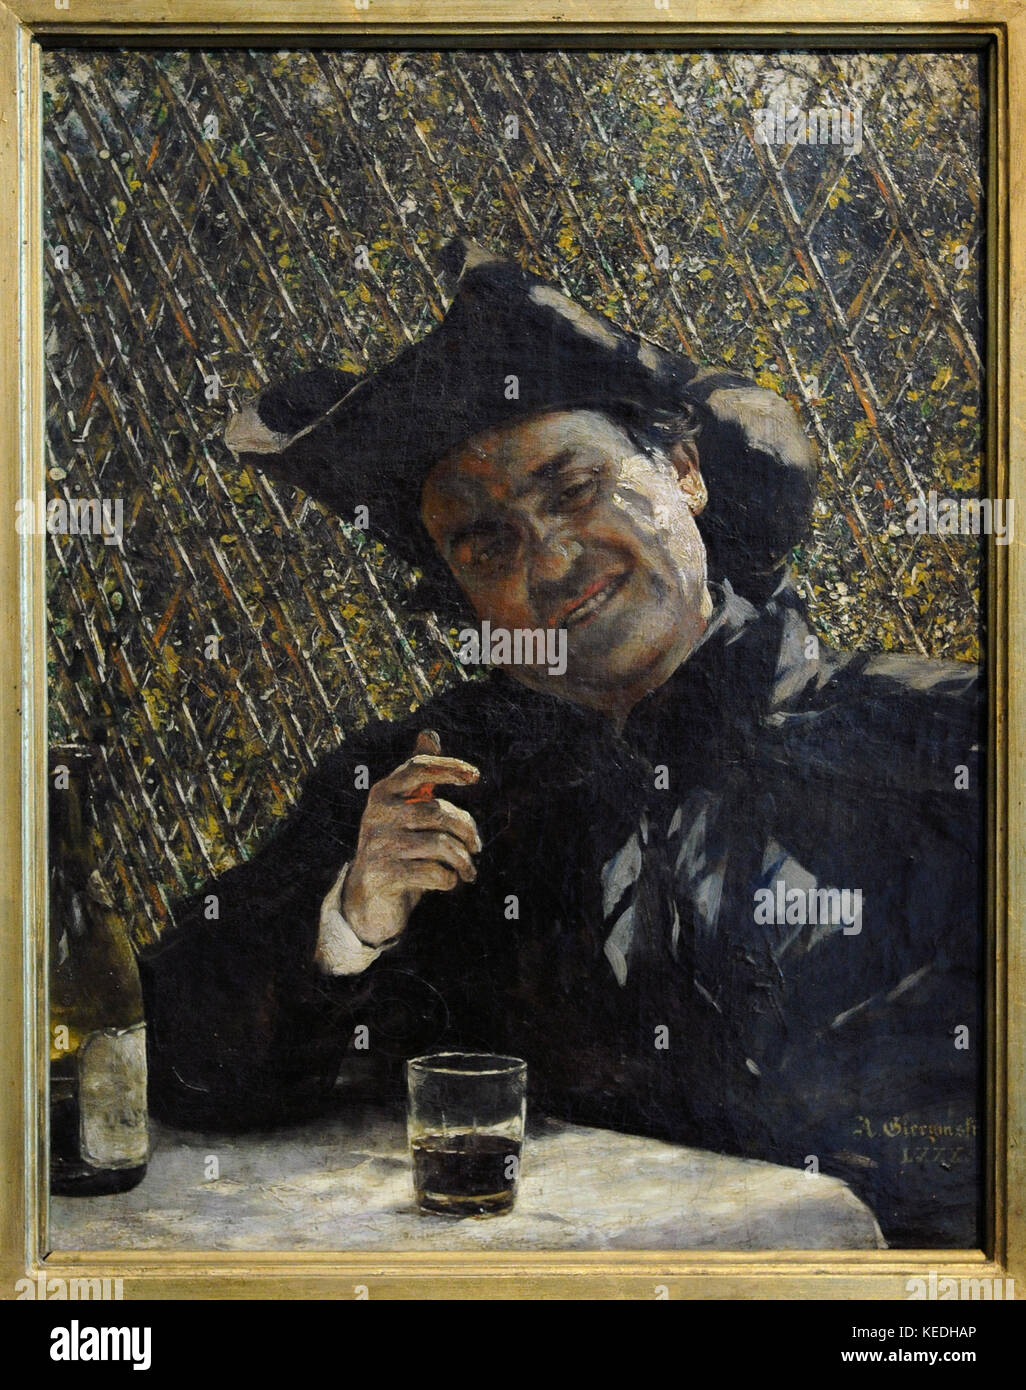 Aleksander Gierymski (1850-1901) peintre polonais.. prêtre de boire du vin. étude pour un pavillon, 1880. musée de Silésie. Katowice, Pologne. Banque D'Images